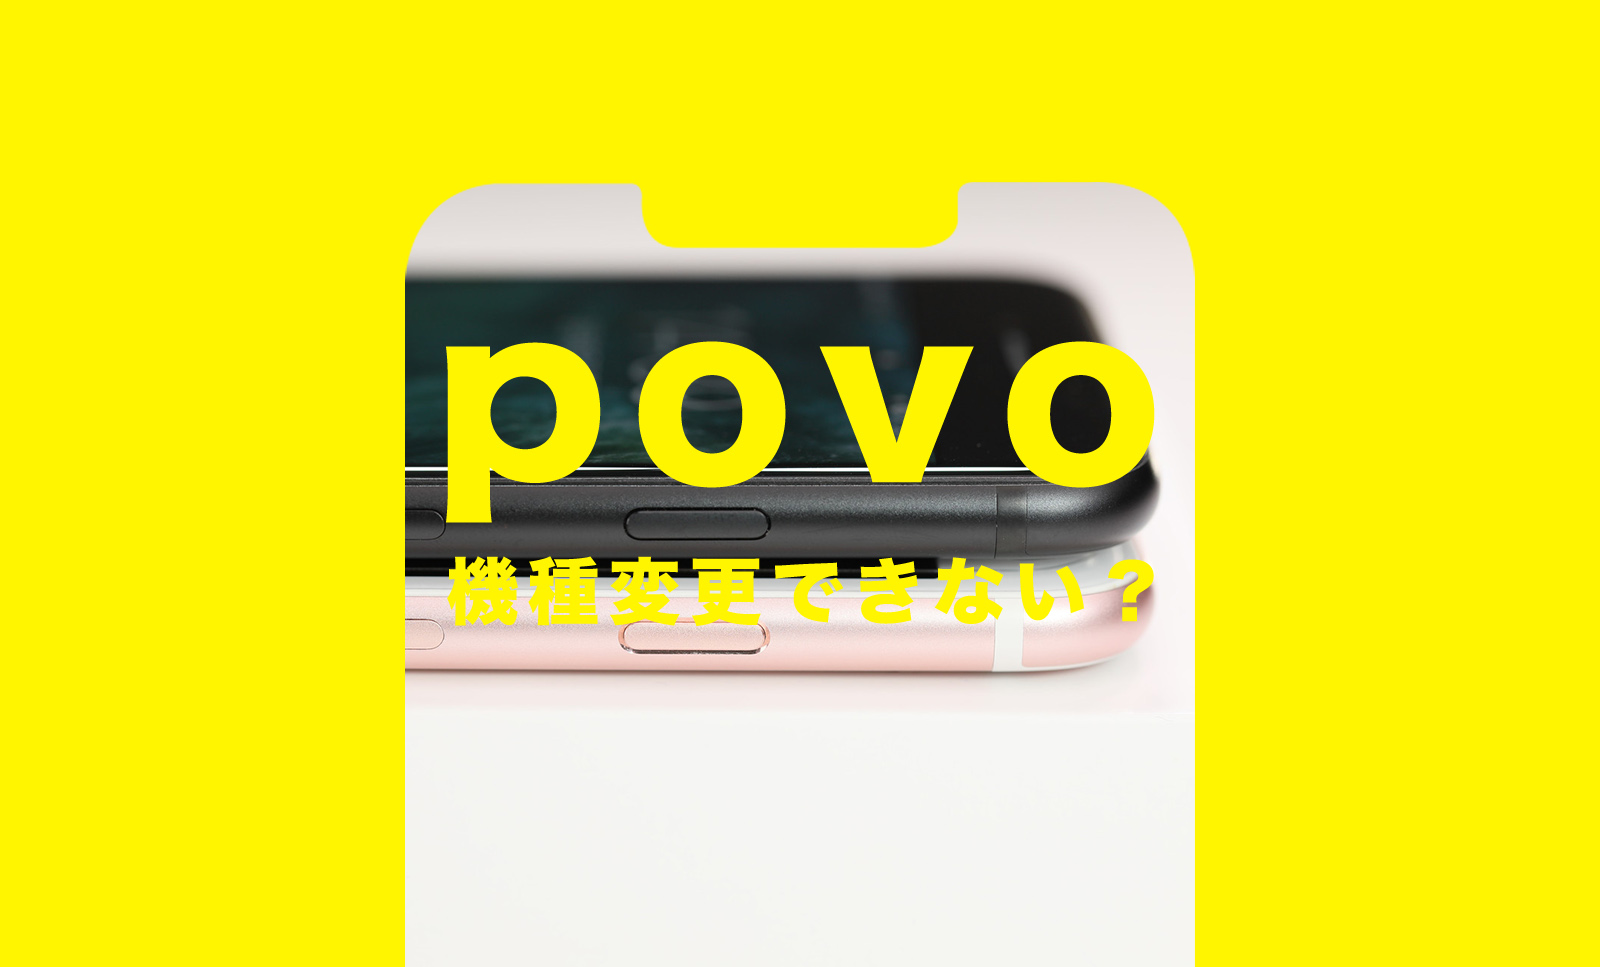 povo(ポヴォ)2.0は機種変更できない？契約と同時や新しいiPhoneに変更するやり方は？のサムネイル画像